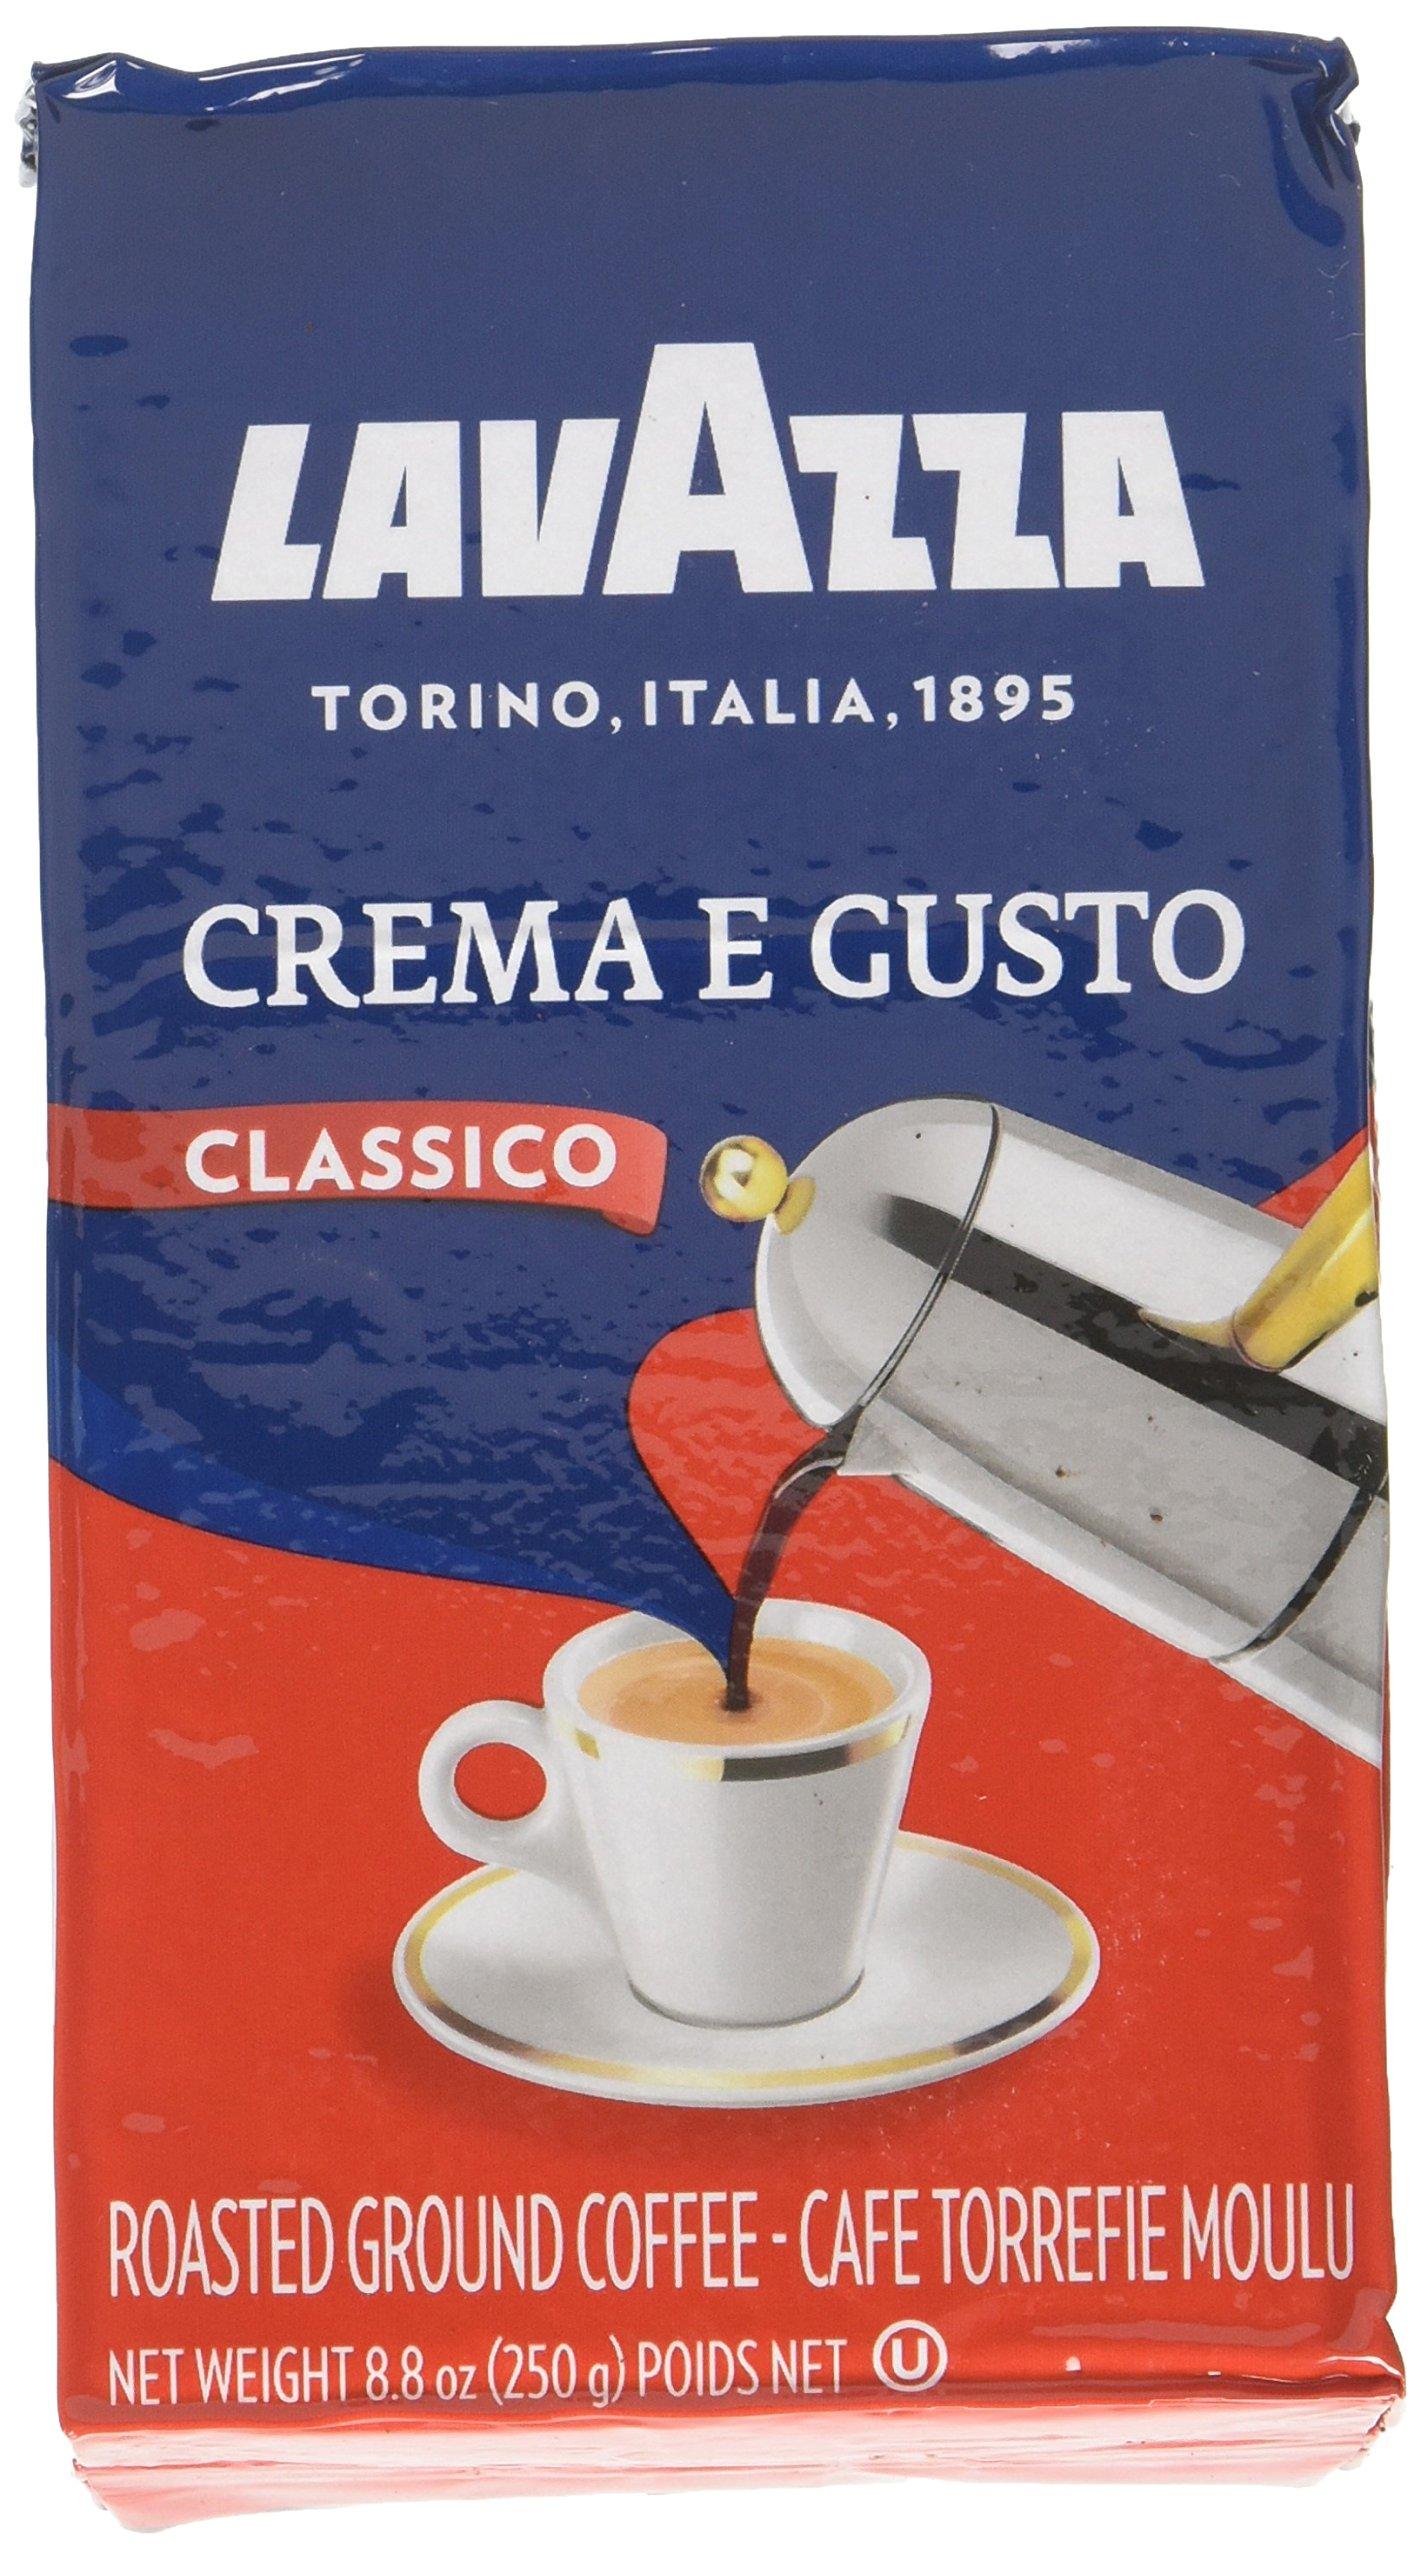 Café CREMA E GUSTO Lavazza 250g